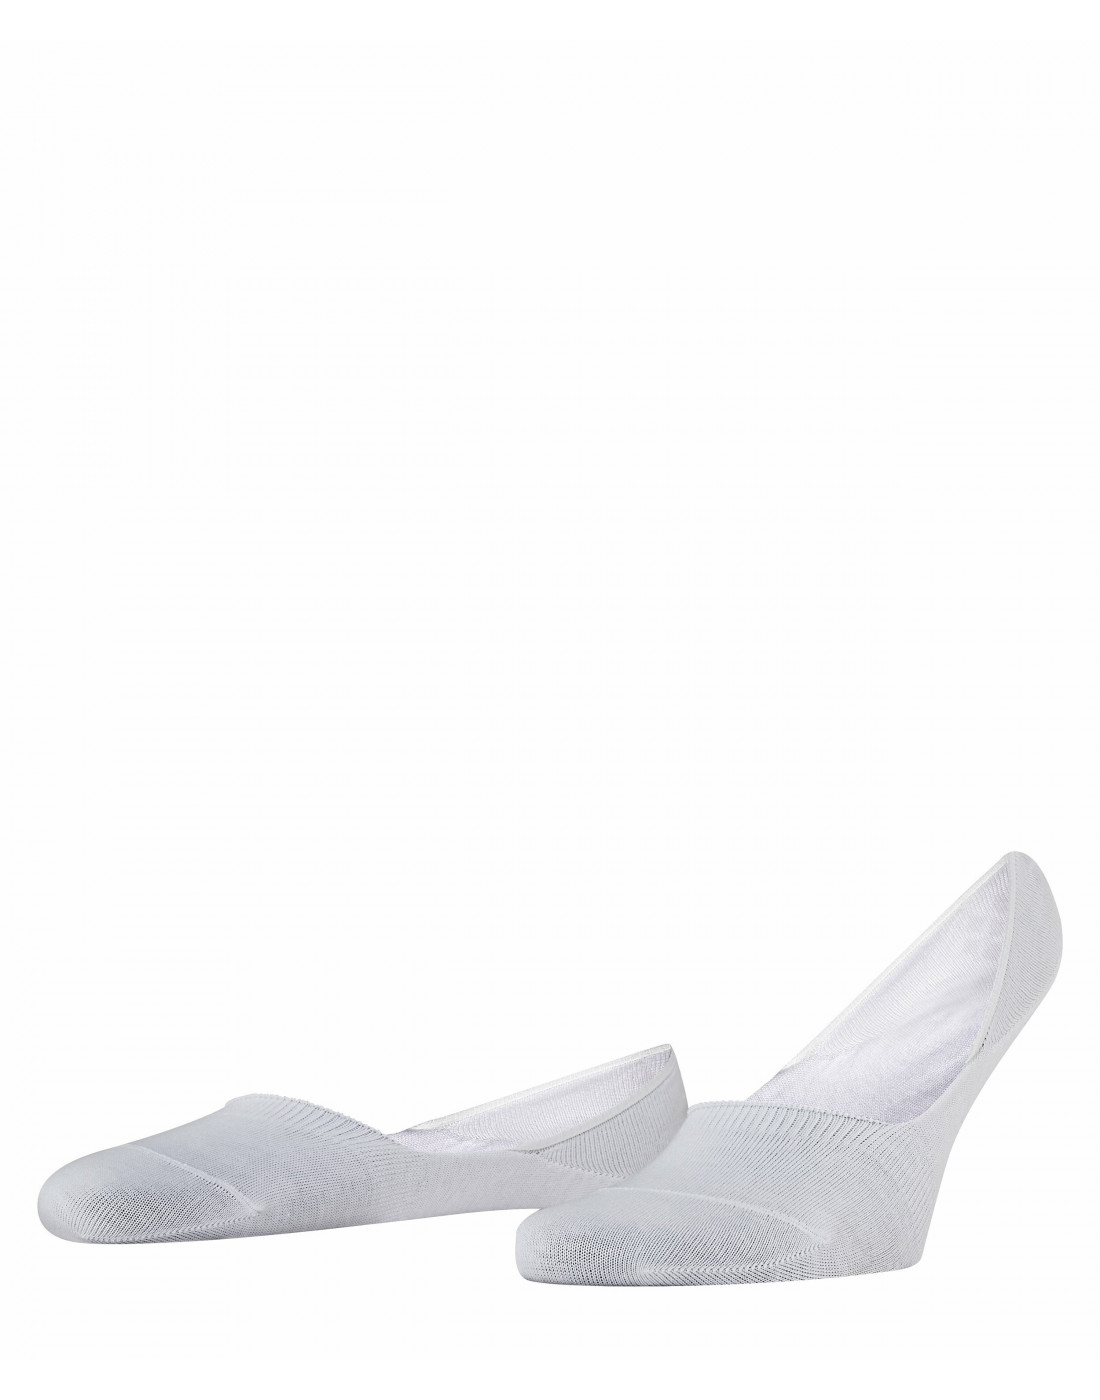 Шкарпетки білі чоловічі-1